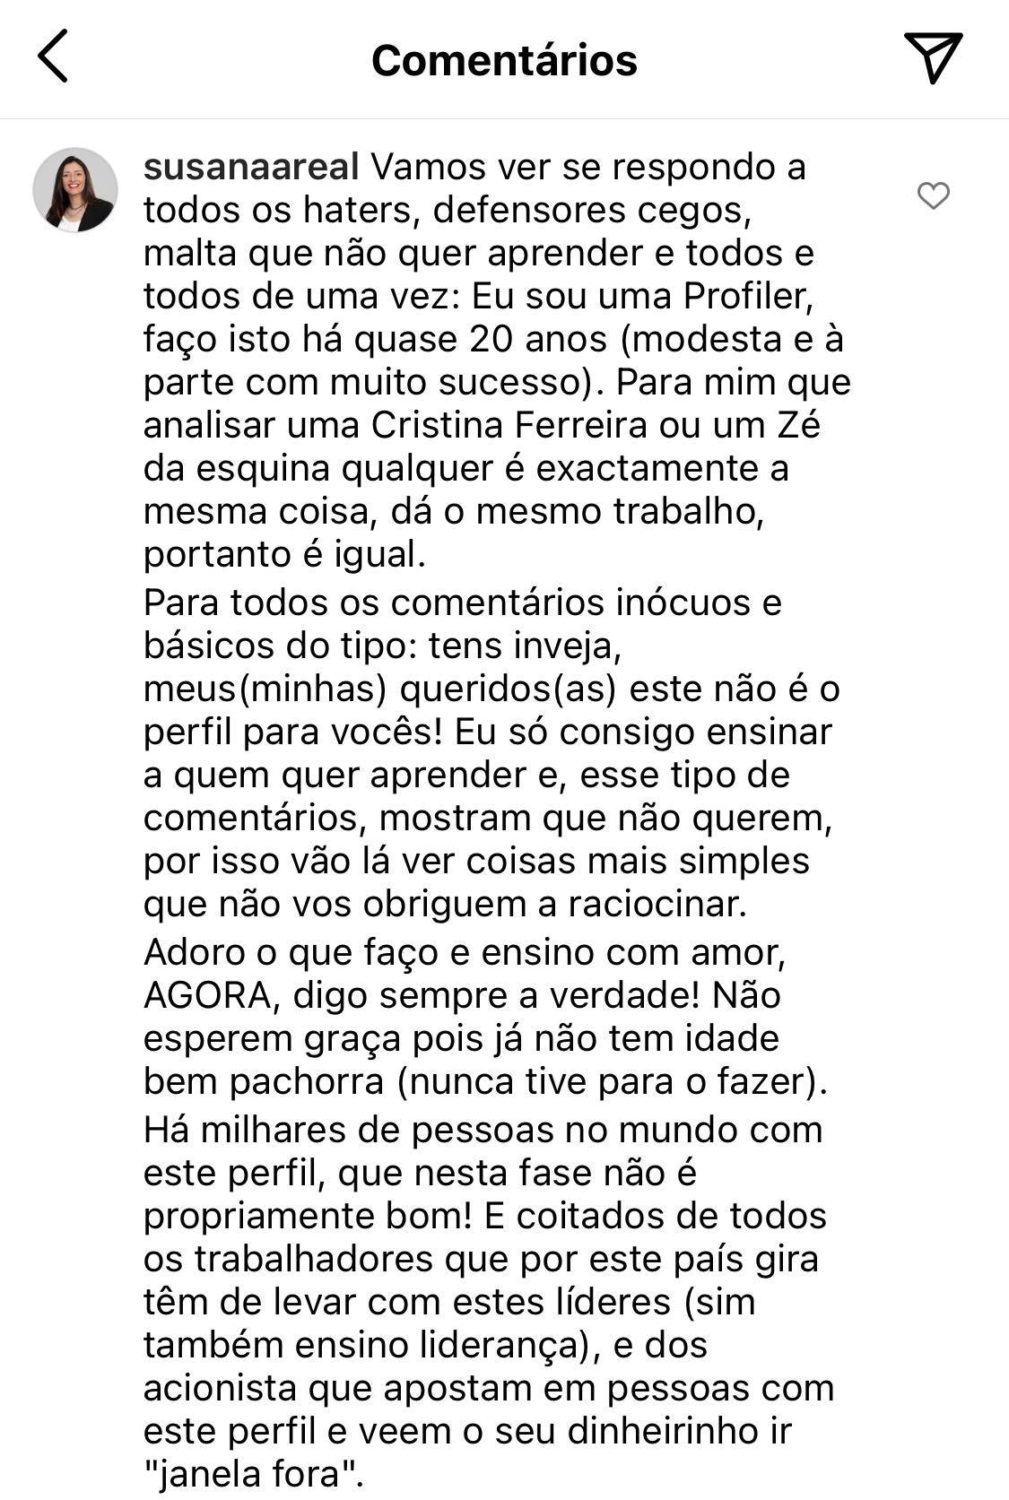 Especialista faz análise ao perfil de Cristina Ferreira, é criticada e reage: “Tens inveja…”